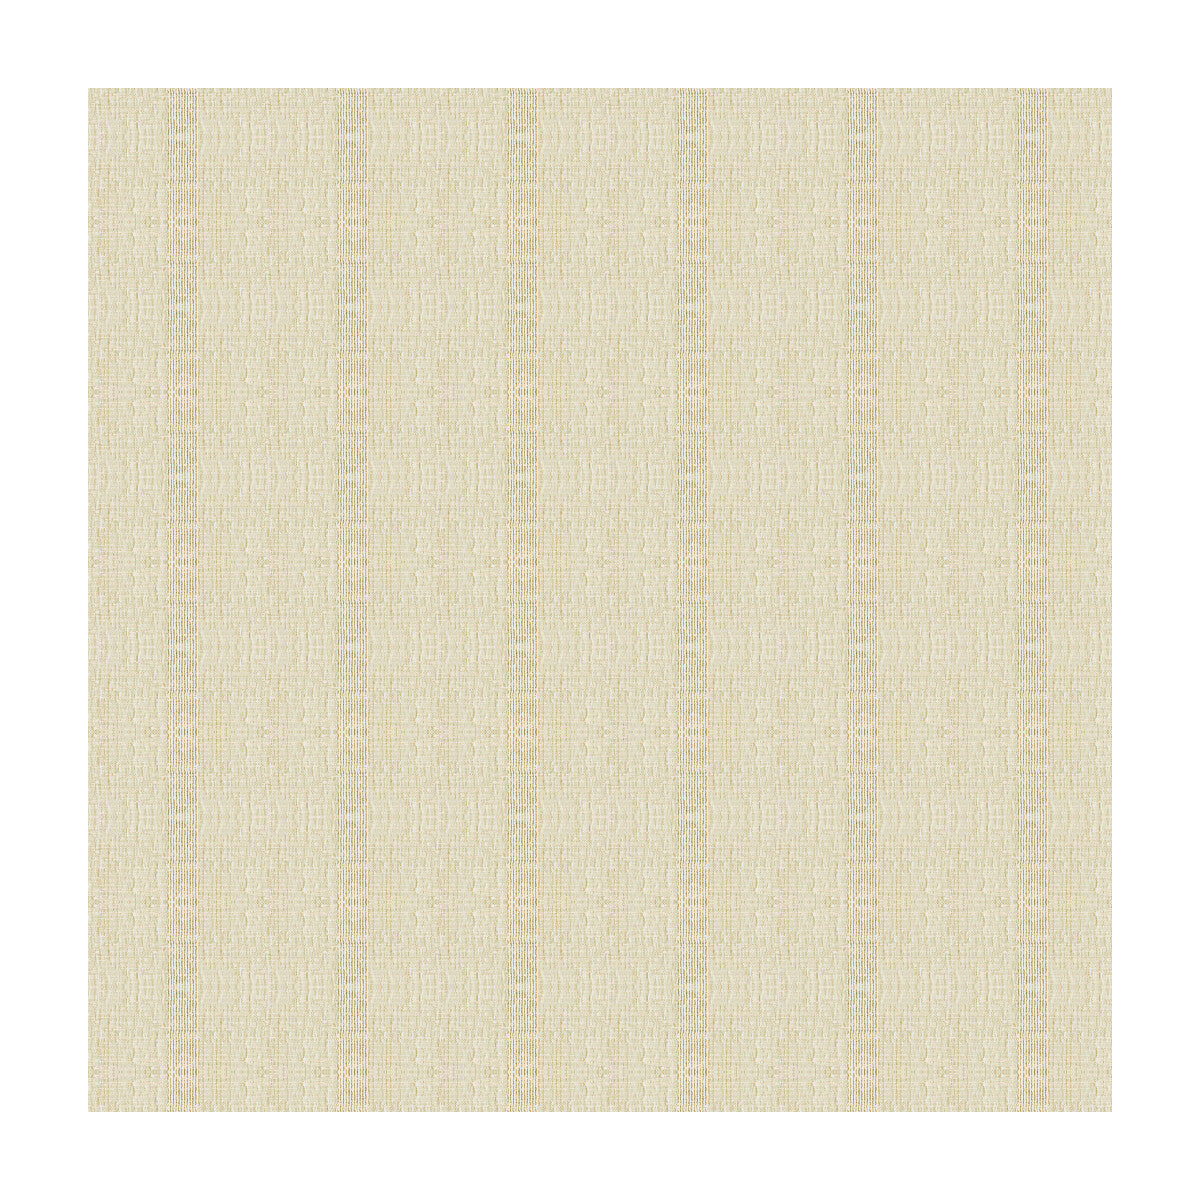 Kravet Basics fabric in 4115-1116 color - pattern 4115.1116.0 - by Kravet Basics